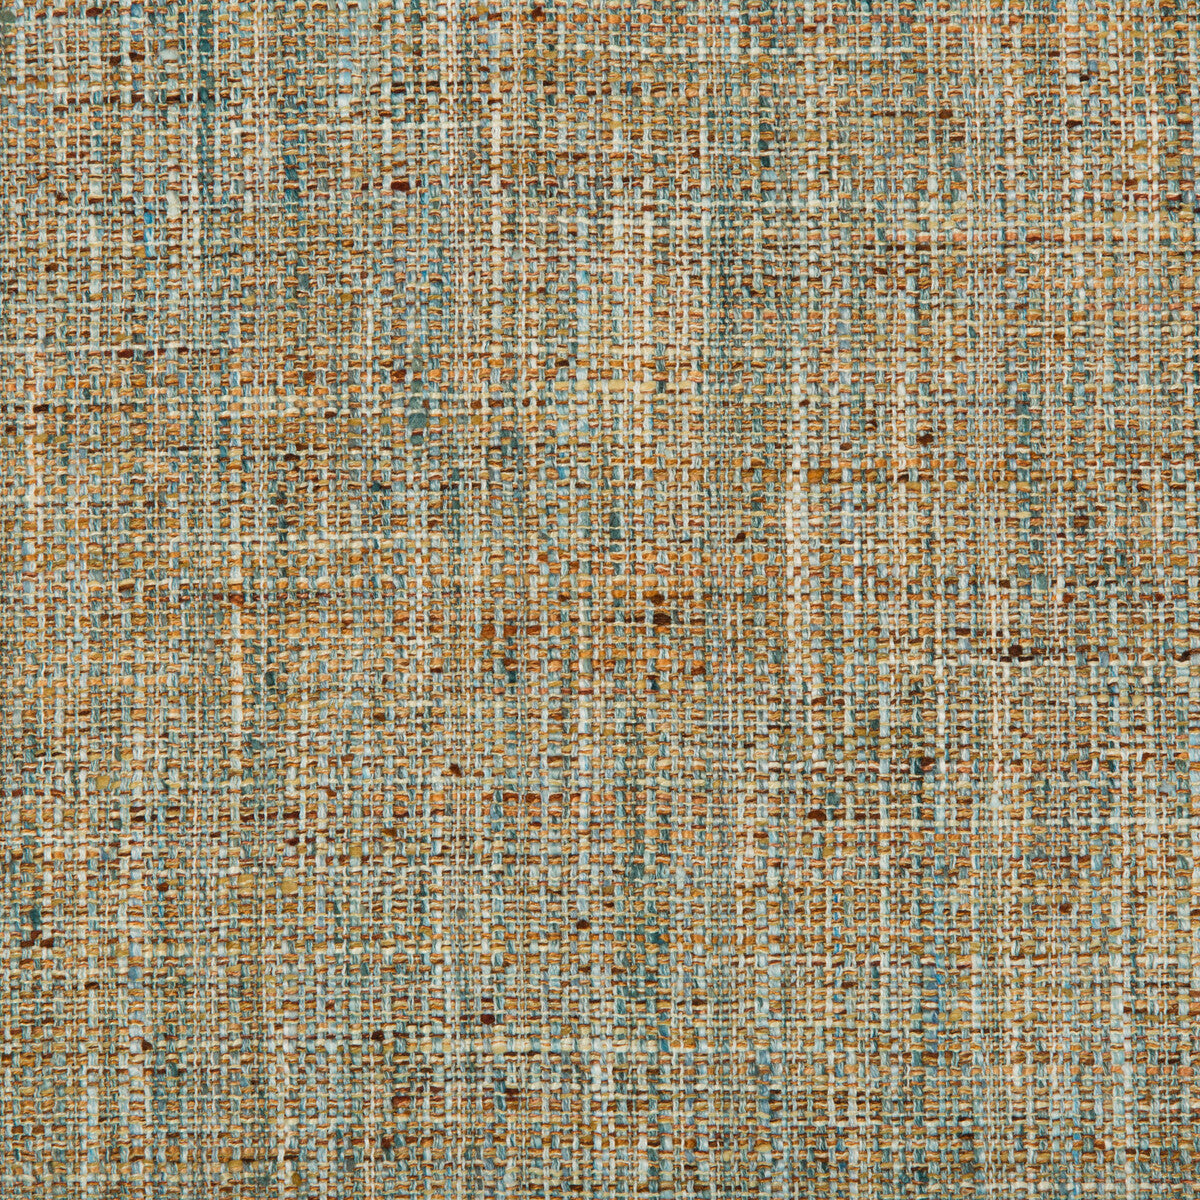 Kravet Basics fabric in 35276-524 color - pattern 35276.524.0 - by Kravet Basics